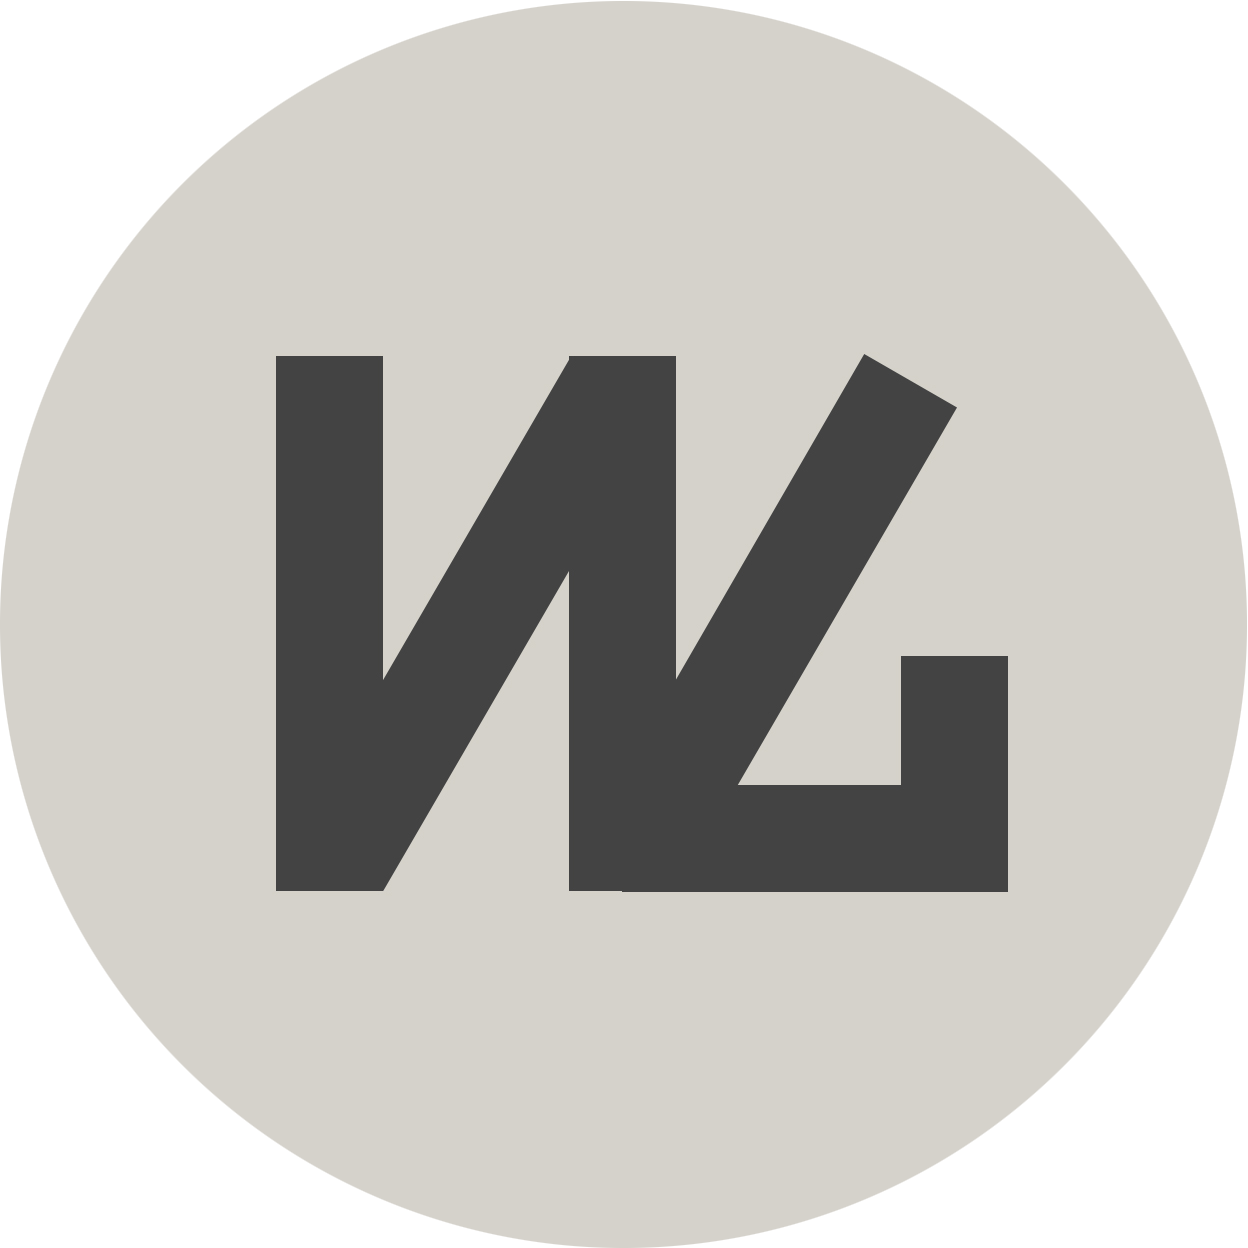 wg-logo-circle.png